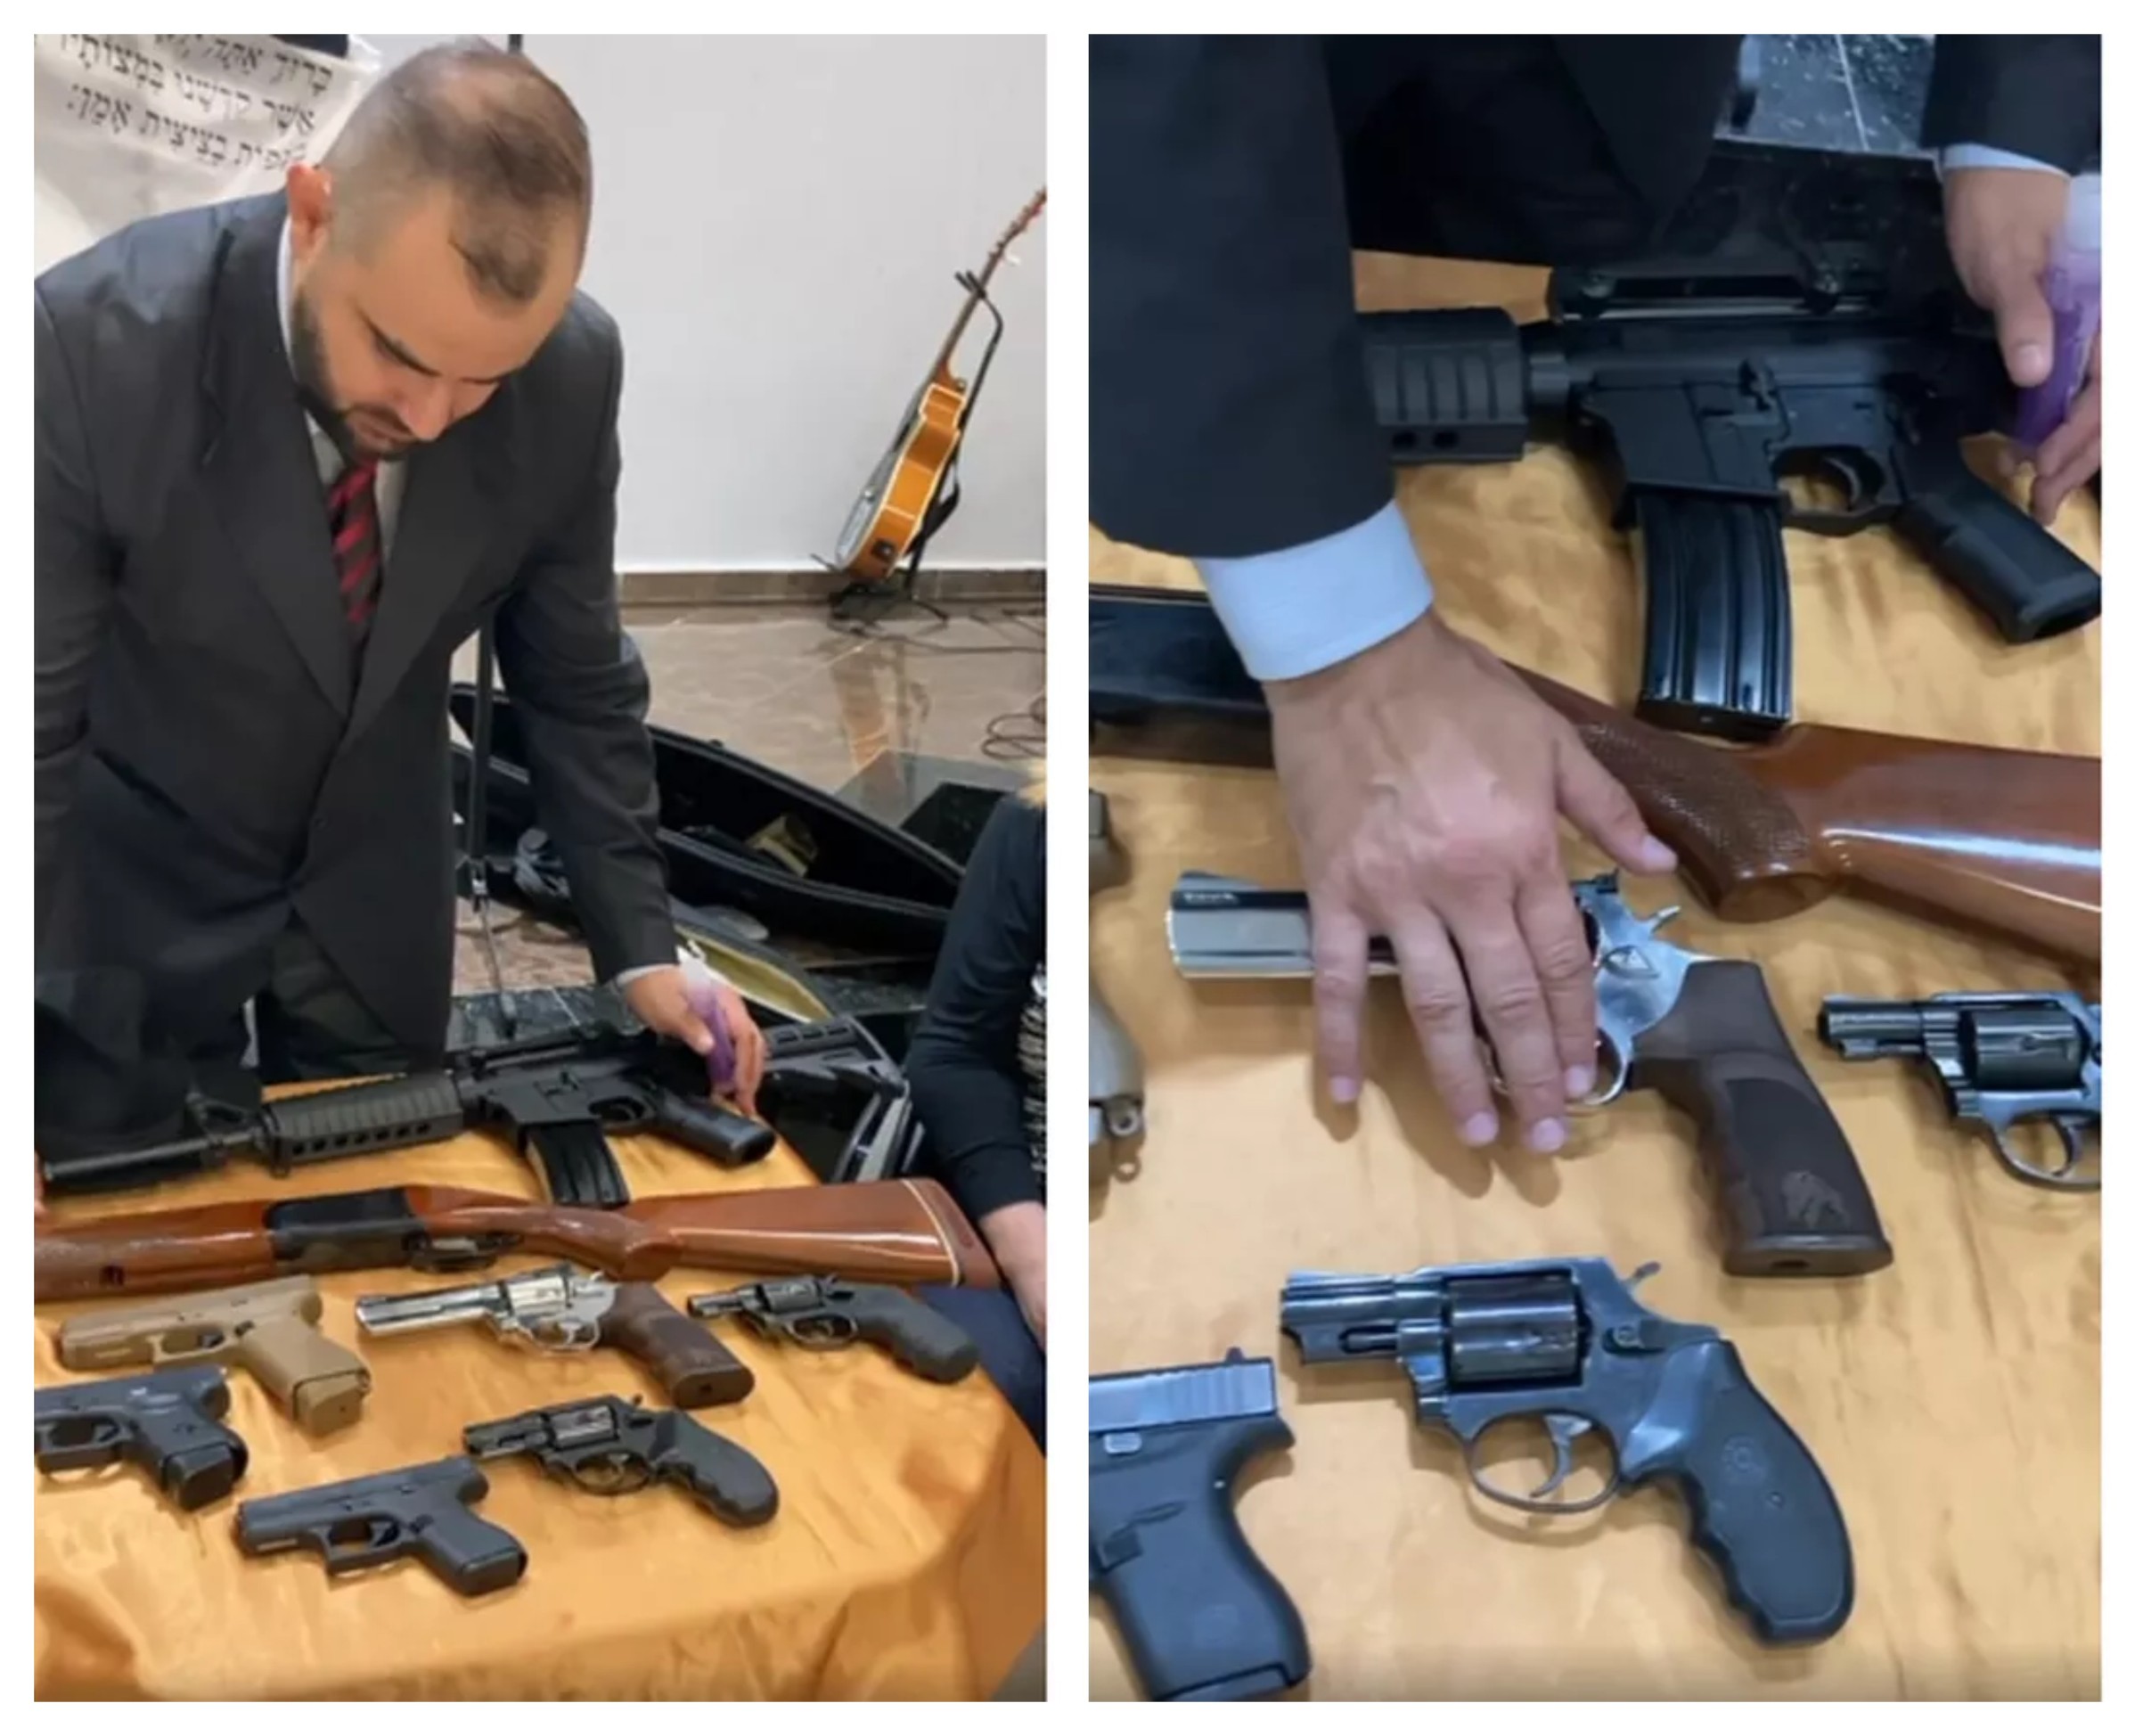 Pastor faz unção de armas da coleção de delegado: 'Energias positivas